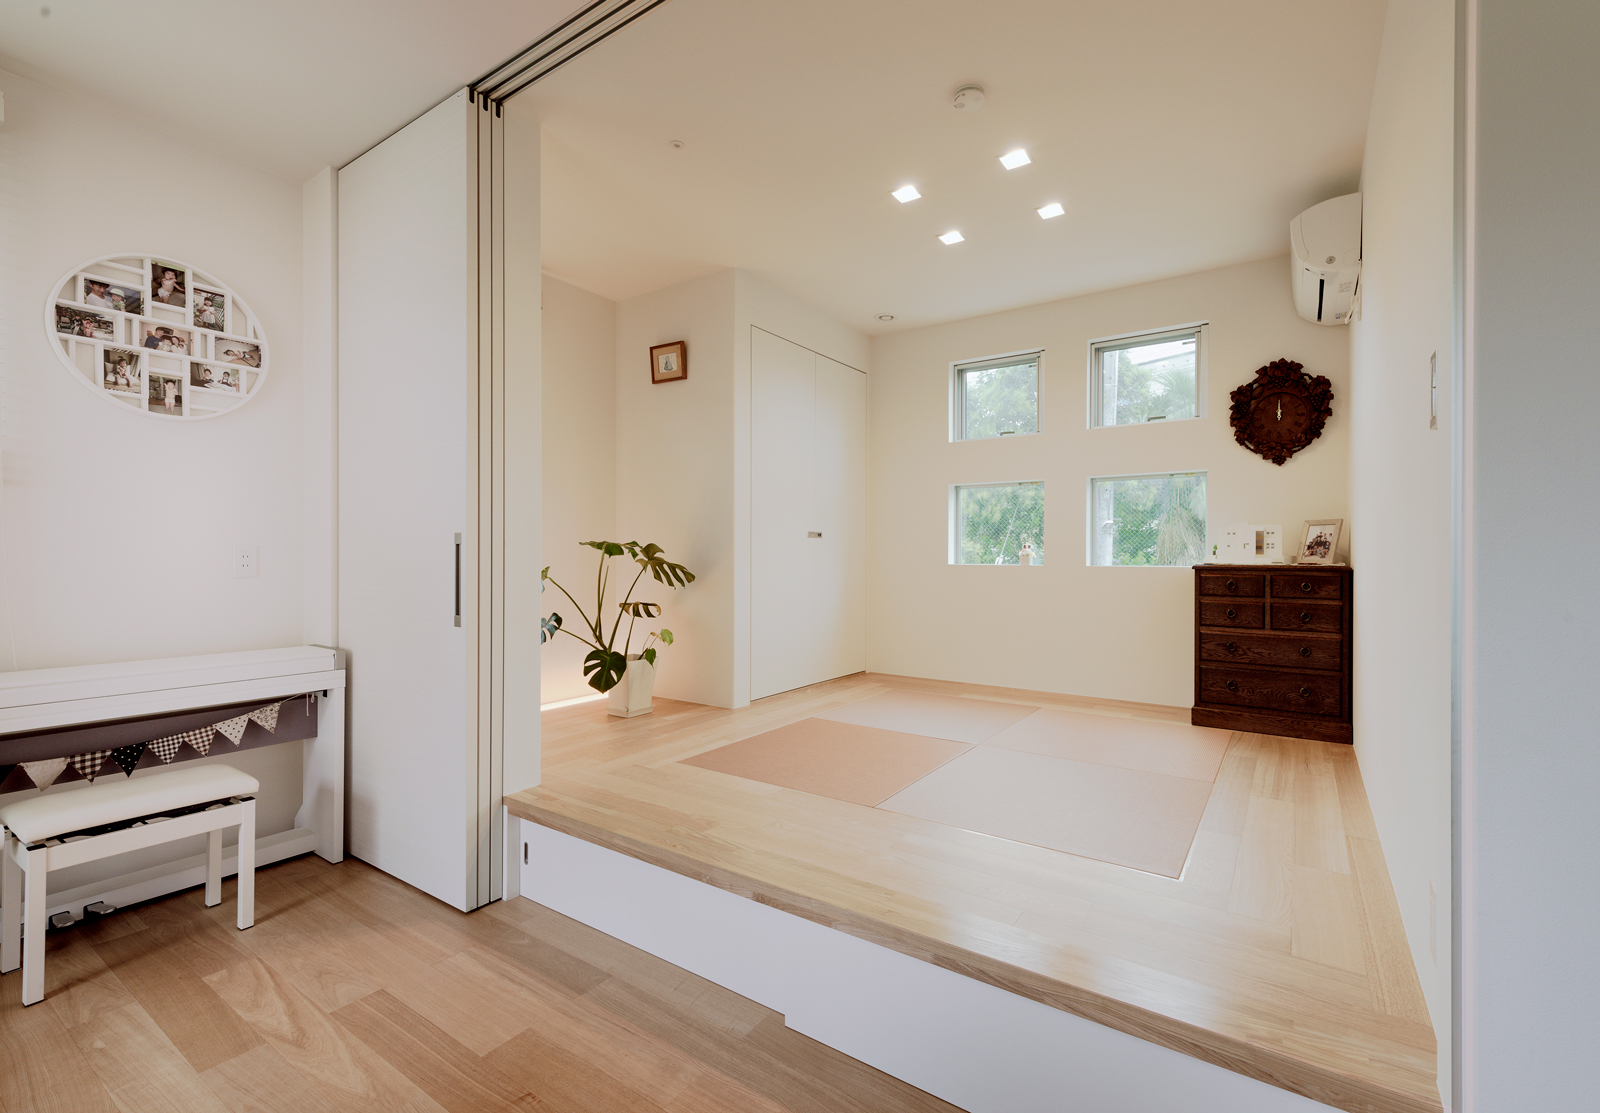 床の間のある小上がり
普段は扉を開けて開放的に、ご来客の際には扉を閉めて客室として使用できます